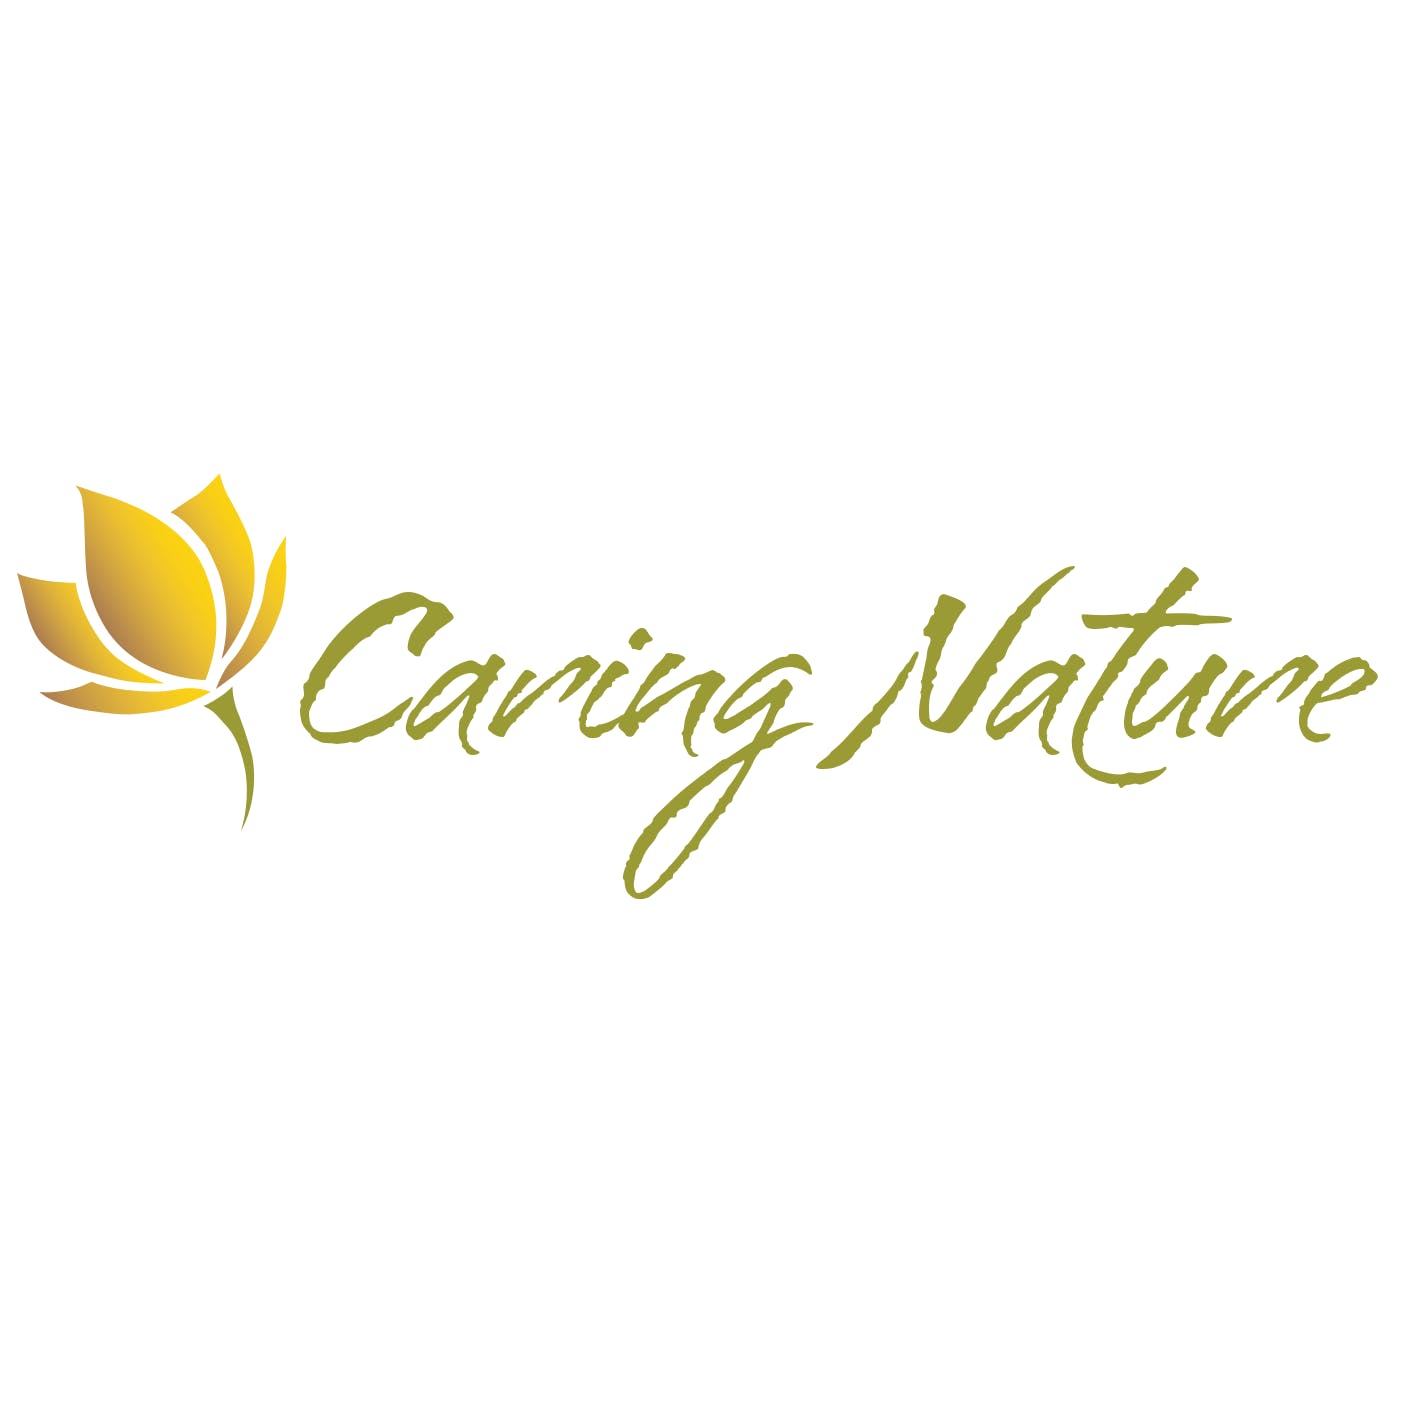 Caring Nature, LLC - Medical Marijuana Doctors - Cannabizme.com